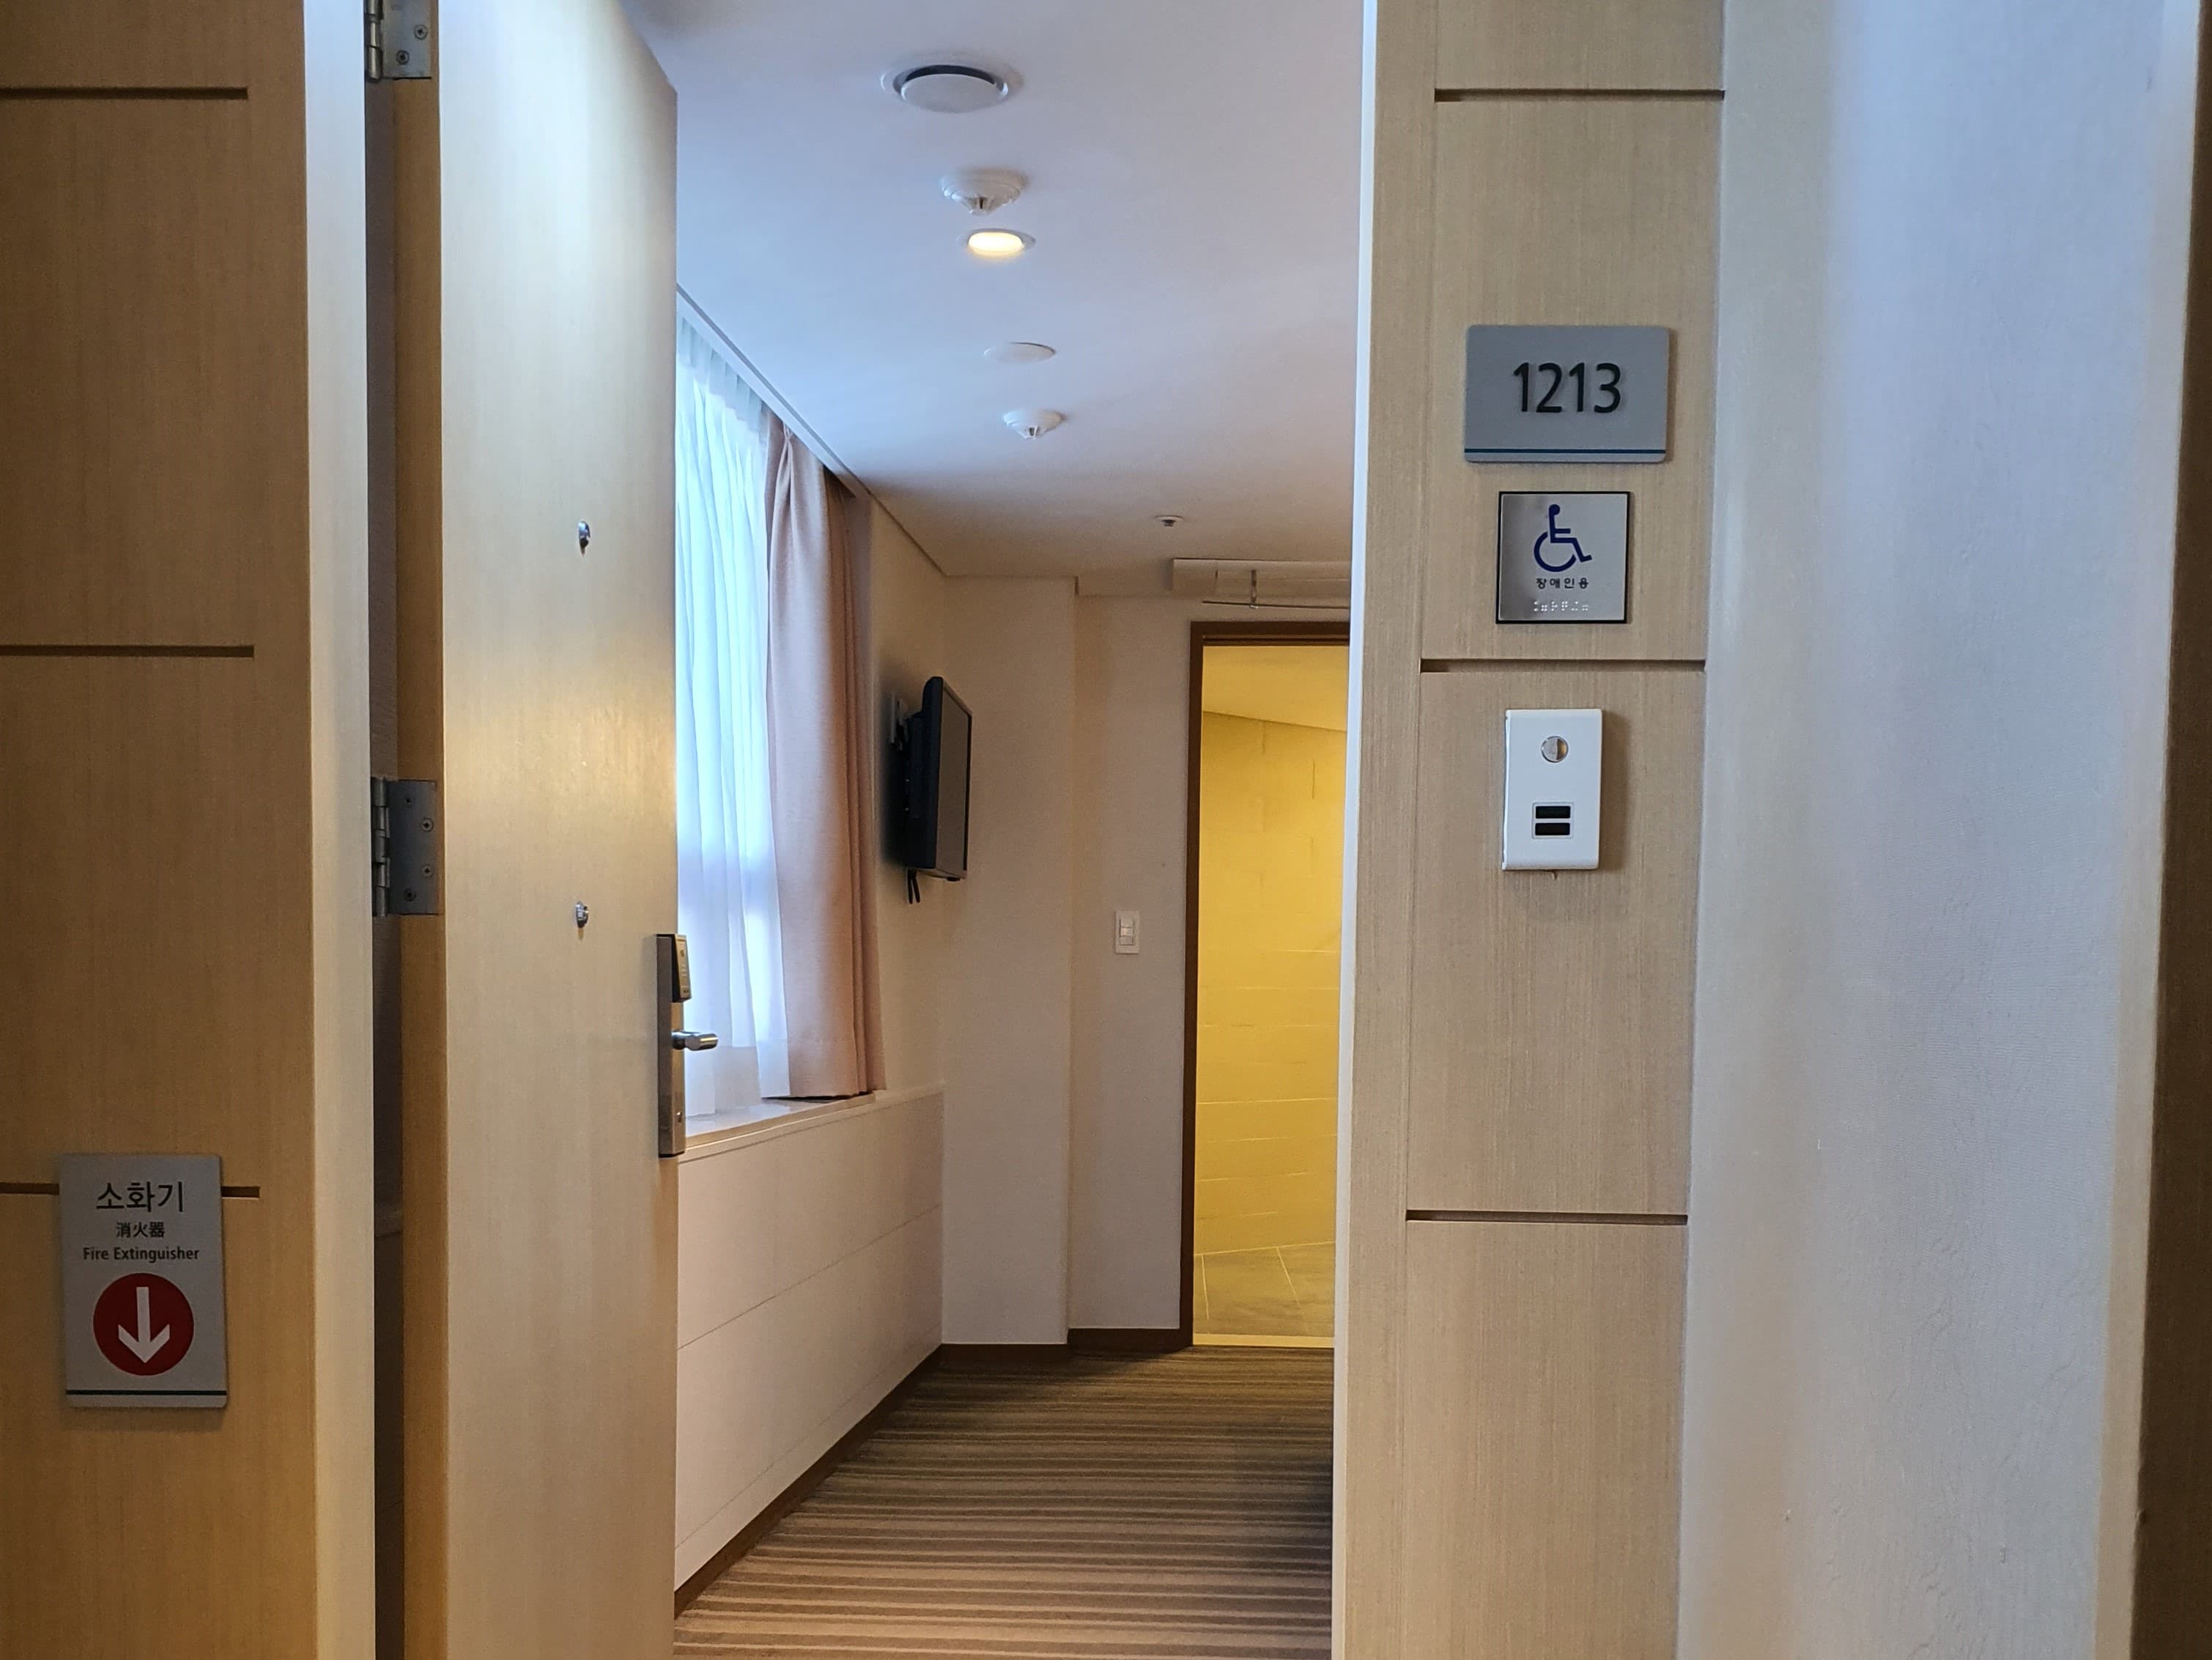 Accessible guestroom0 : 나인트리 호텔 명동 진입로사진입니다. 